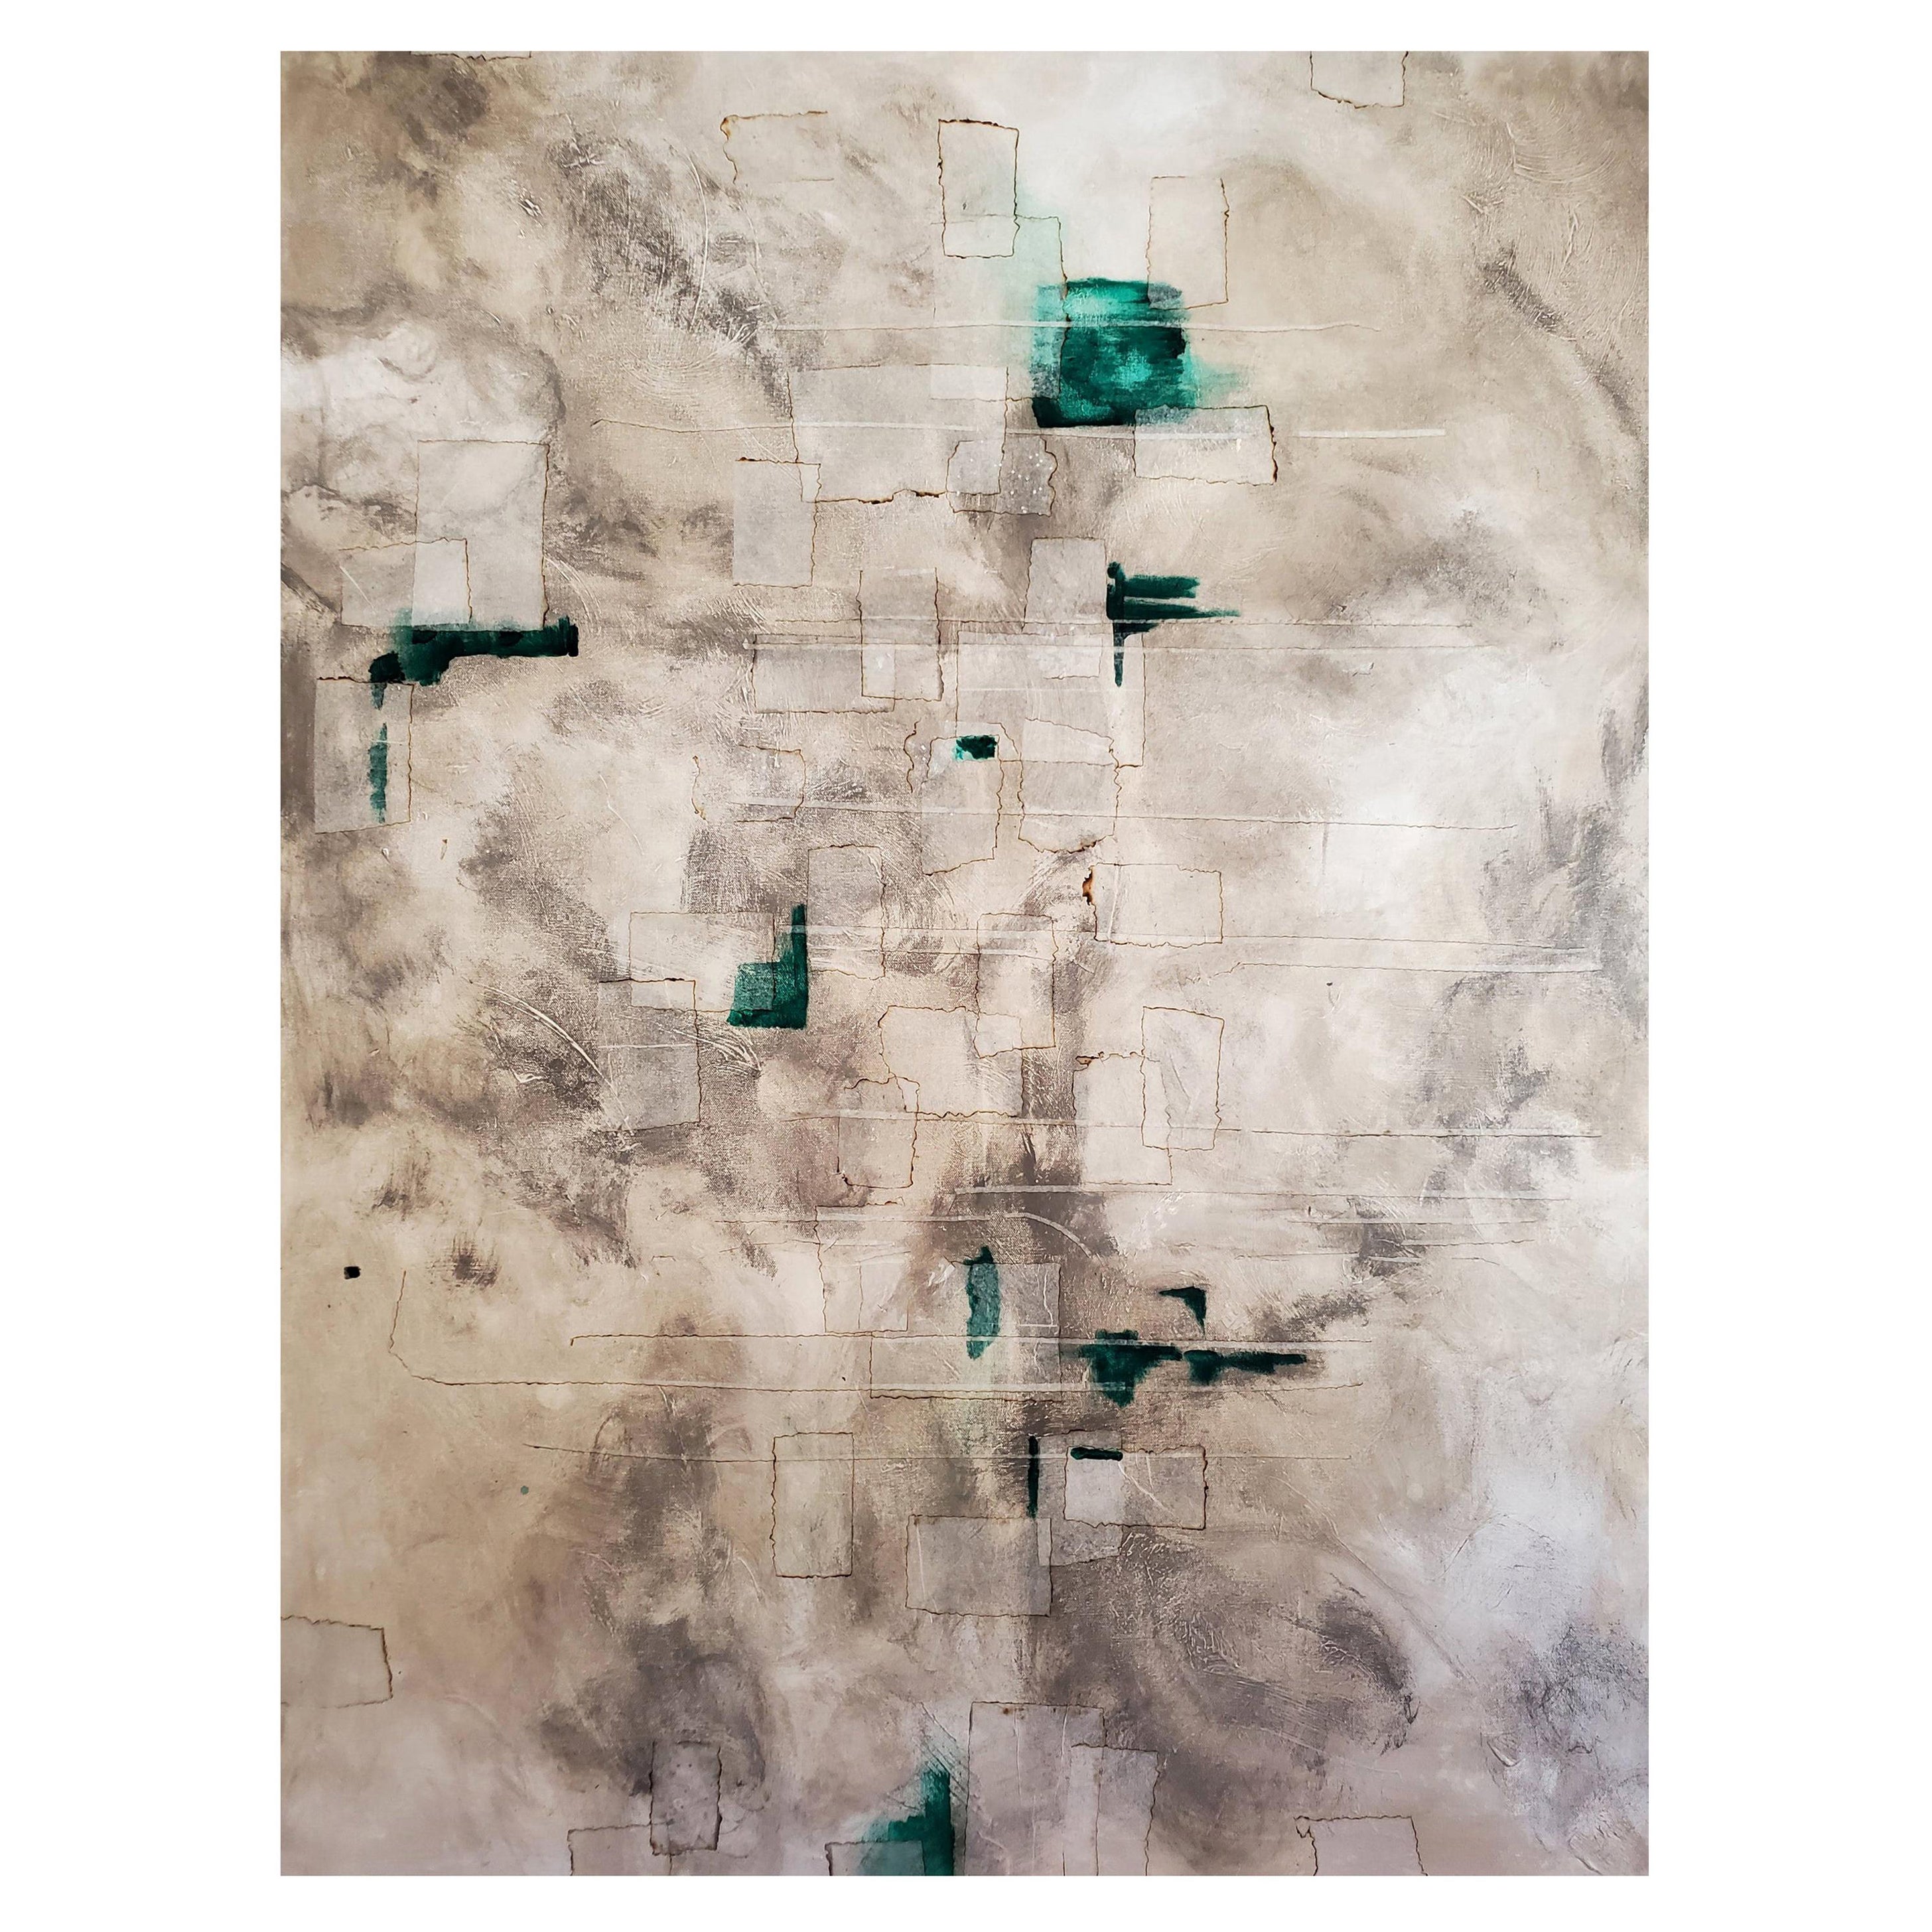 Abstraktes Gemälde „Archipelago“ in Mischtechnik in Grau und Teal auf Leinwand